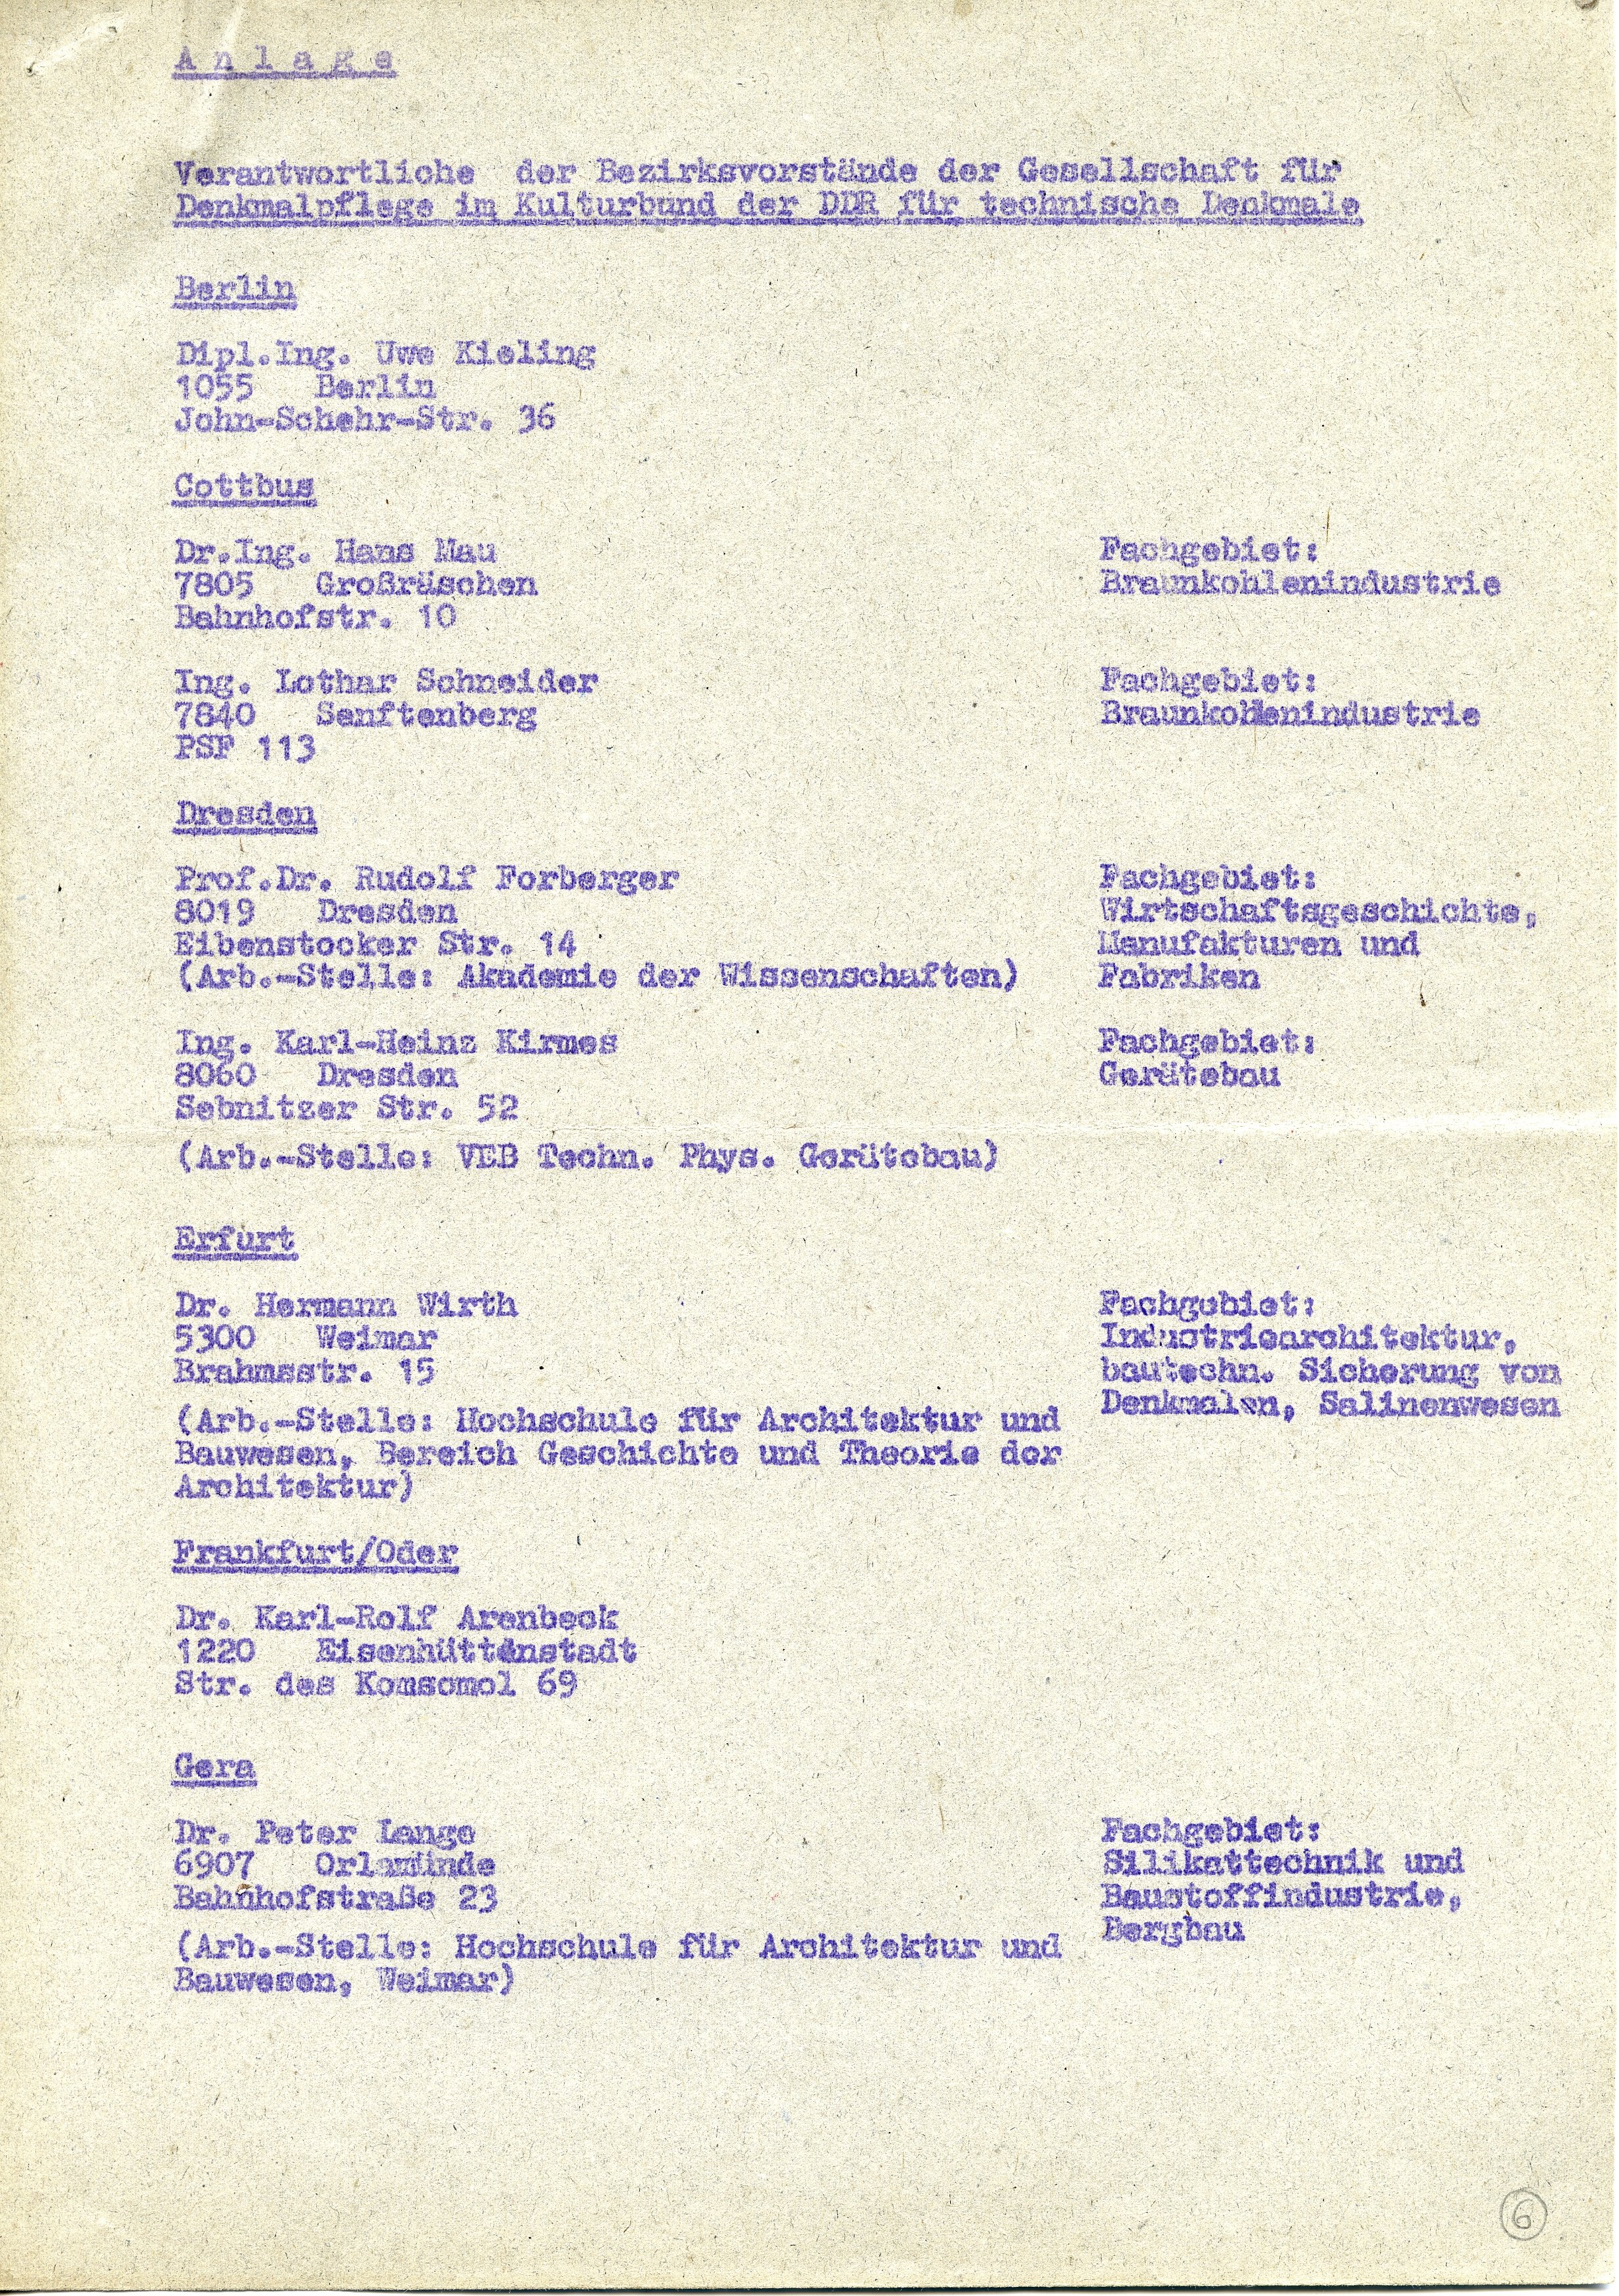 Bezirksvorstände der GfD für Technische Denkmale - Mitgliederliste (Historische Mühle von Sanssouci CC BY-NC-SA)